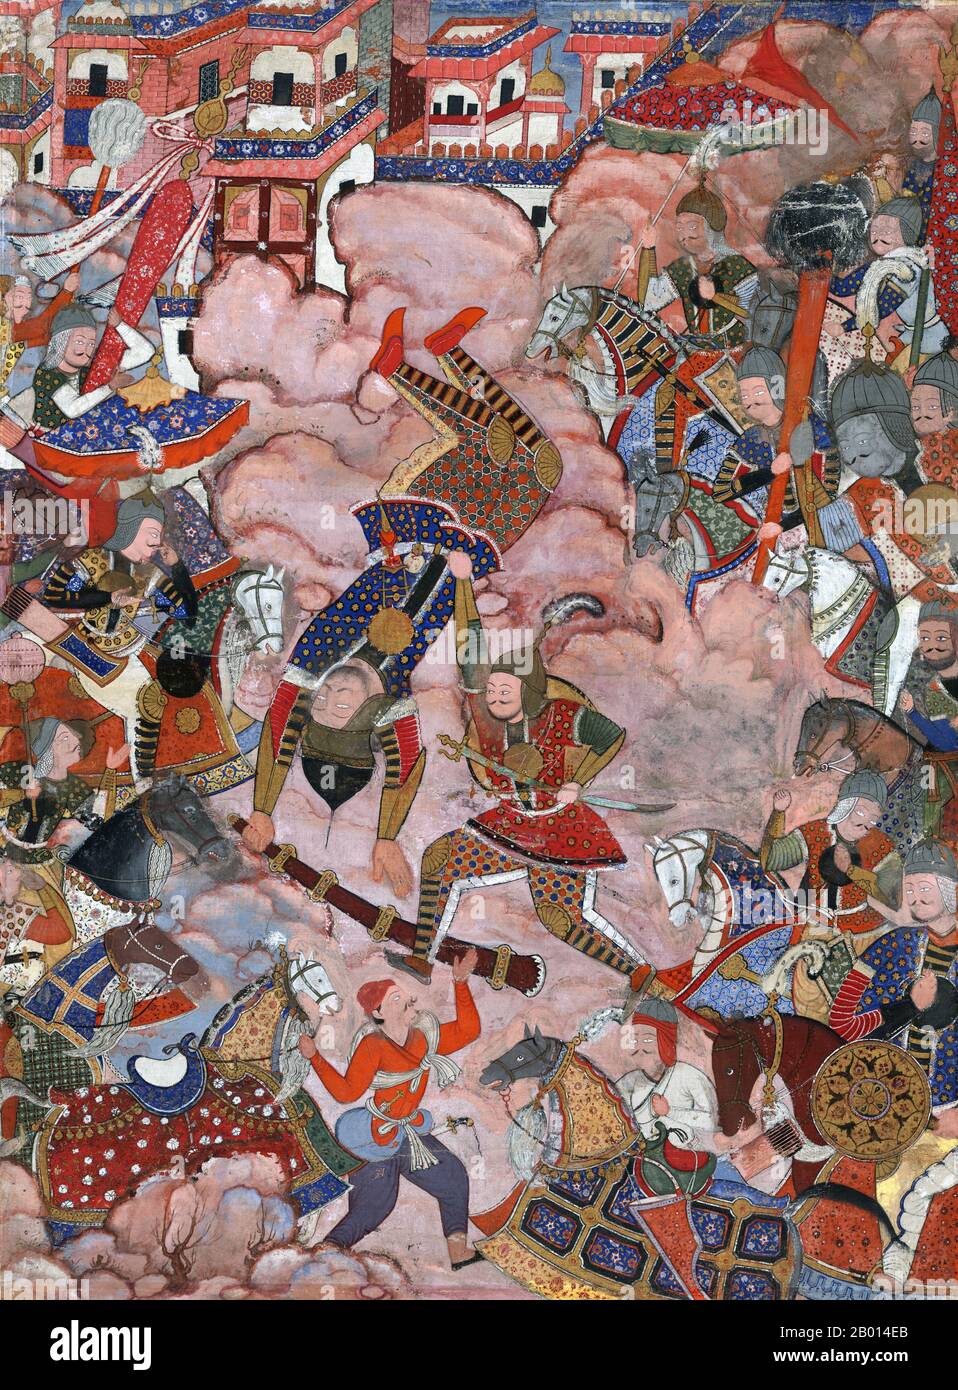 Inde: 'La bataille de Mazandaran', représentant une scène du Hamzanama dans laquelle Khwajah 'Umar et Hamzah et leurs armées s'engagent dans une bataille féroce. Gouache et peinture d'or, c. 1564-1579. Le Hamzanama ou Dastan-e-Amir Hamza (aventures d'Amir Hamza) raconte les exploits mythiques d'Amir Hamza, l'oncle du prophète de l'Islam. La plus grande partie de l'histoire est extrêmement fantaisiste, décrit de manière mémorable par le premier empereur Moghul Babur comme: «un long mensonge insensé, opposé au sens et à la nature». Pourtant, le Hamzanama s'est révélé extrêmement populaire auprès du petit-fils de Babur, le troisième empereur moghol Akbar. Banque D'Images